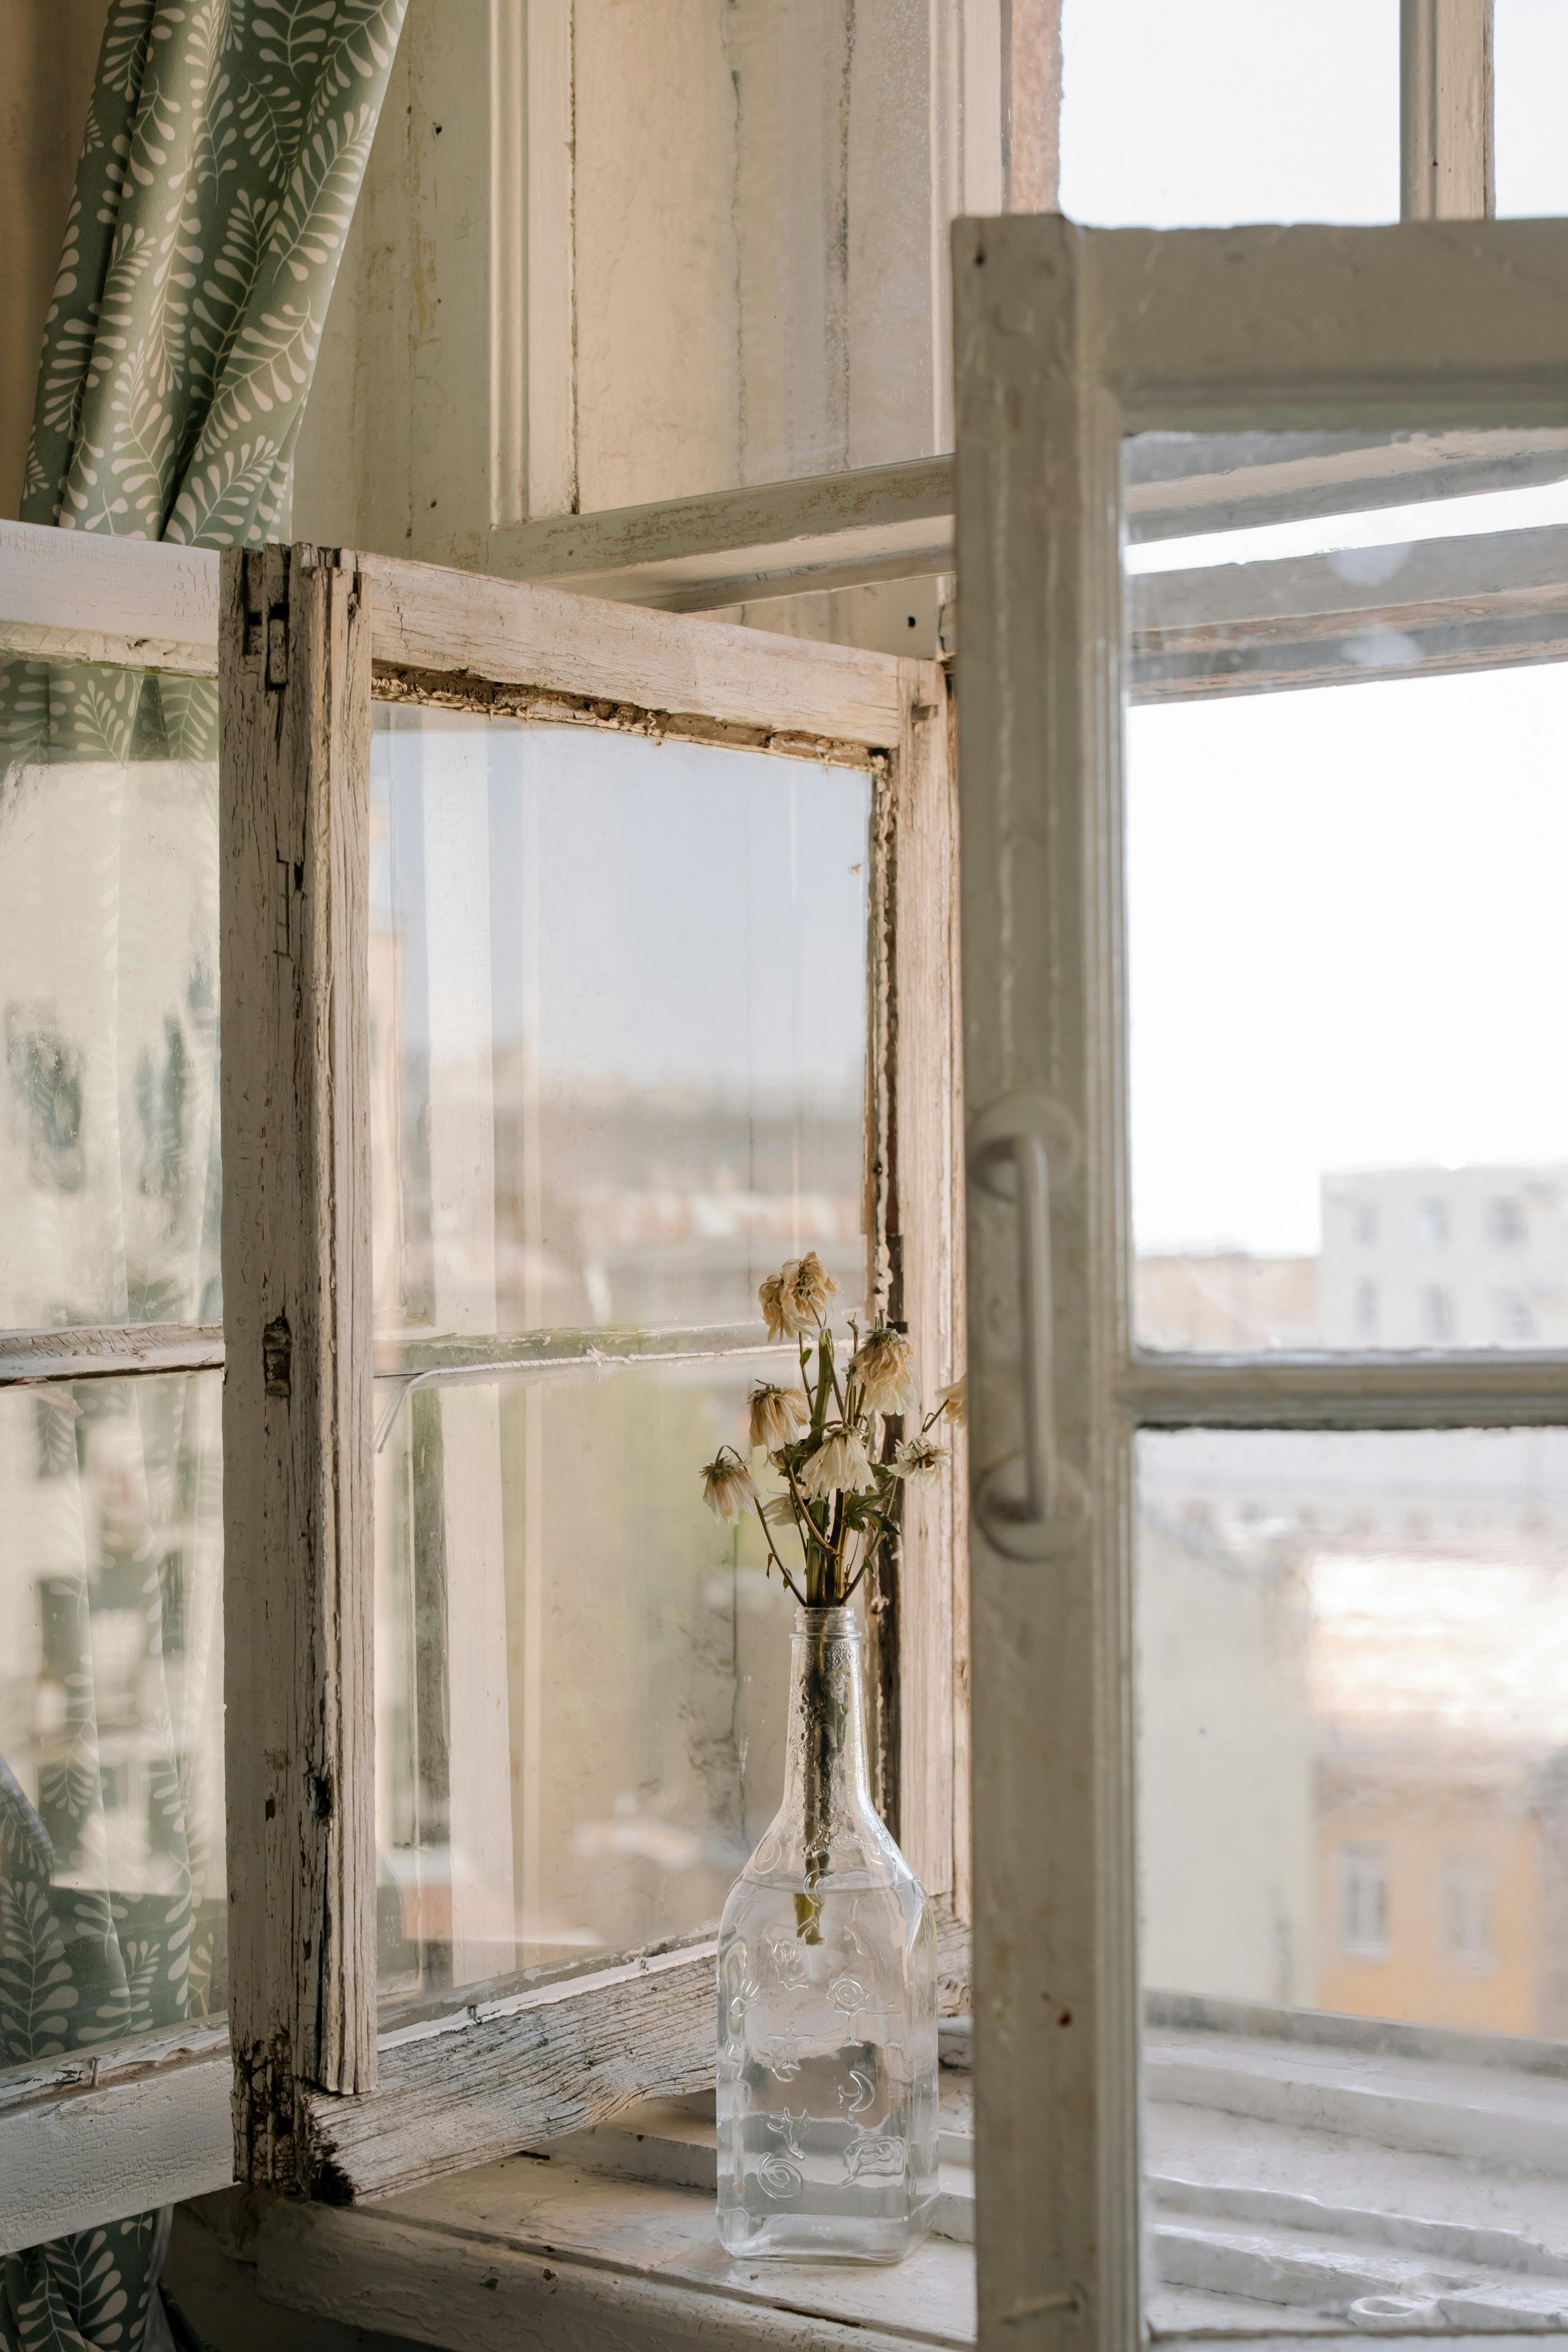 Cửa sổ kính gỗ trắng: Nét tinh tế đầy phóng khoáng, hình ảnh cửa sổ kính gỗ trắng sẽ làm cho không gian được bao quanh bởi ánh sáng tự nhiên, tạo cảm giác mở rộng cho không gian sống của bạn. Hãy cùng ngắm nhìn hình ảnh đầy sống động này và tận hưởng sự thoải mái và độc đáo mà nó mang lại.